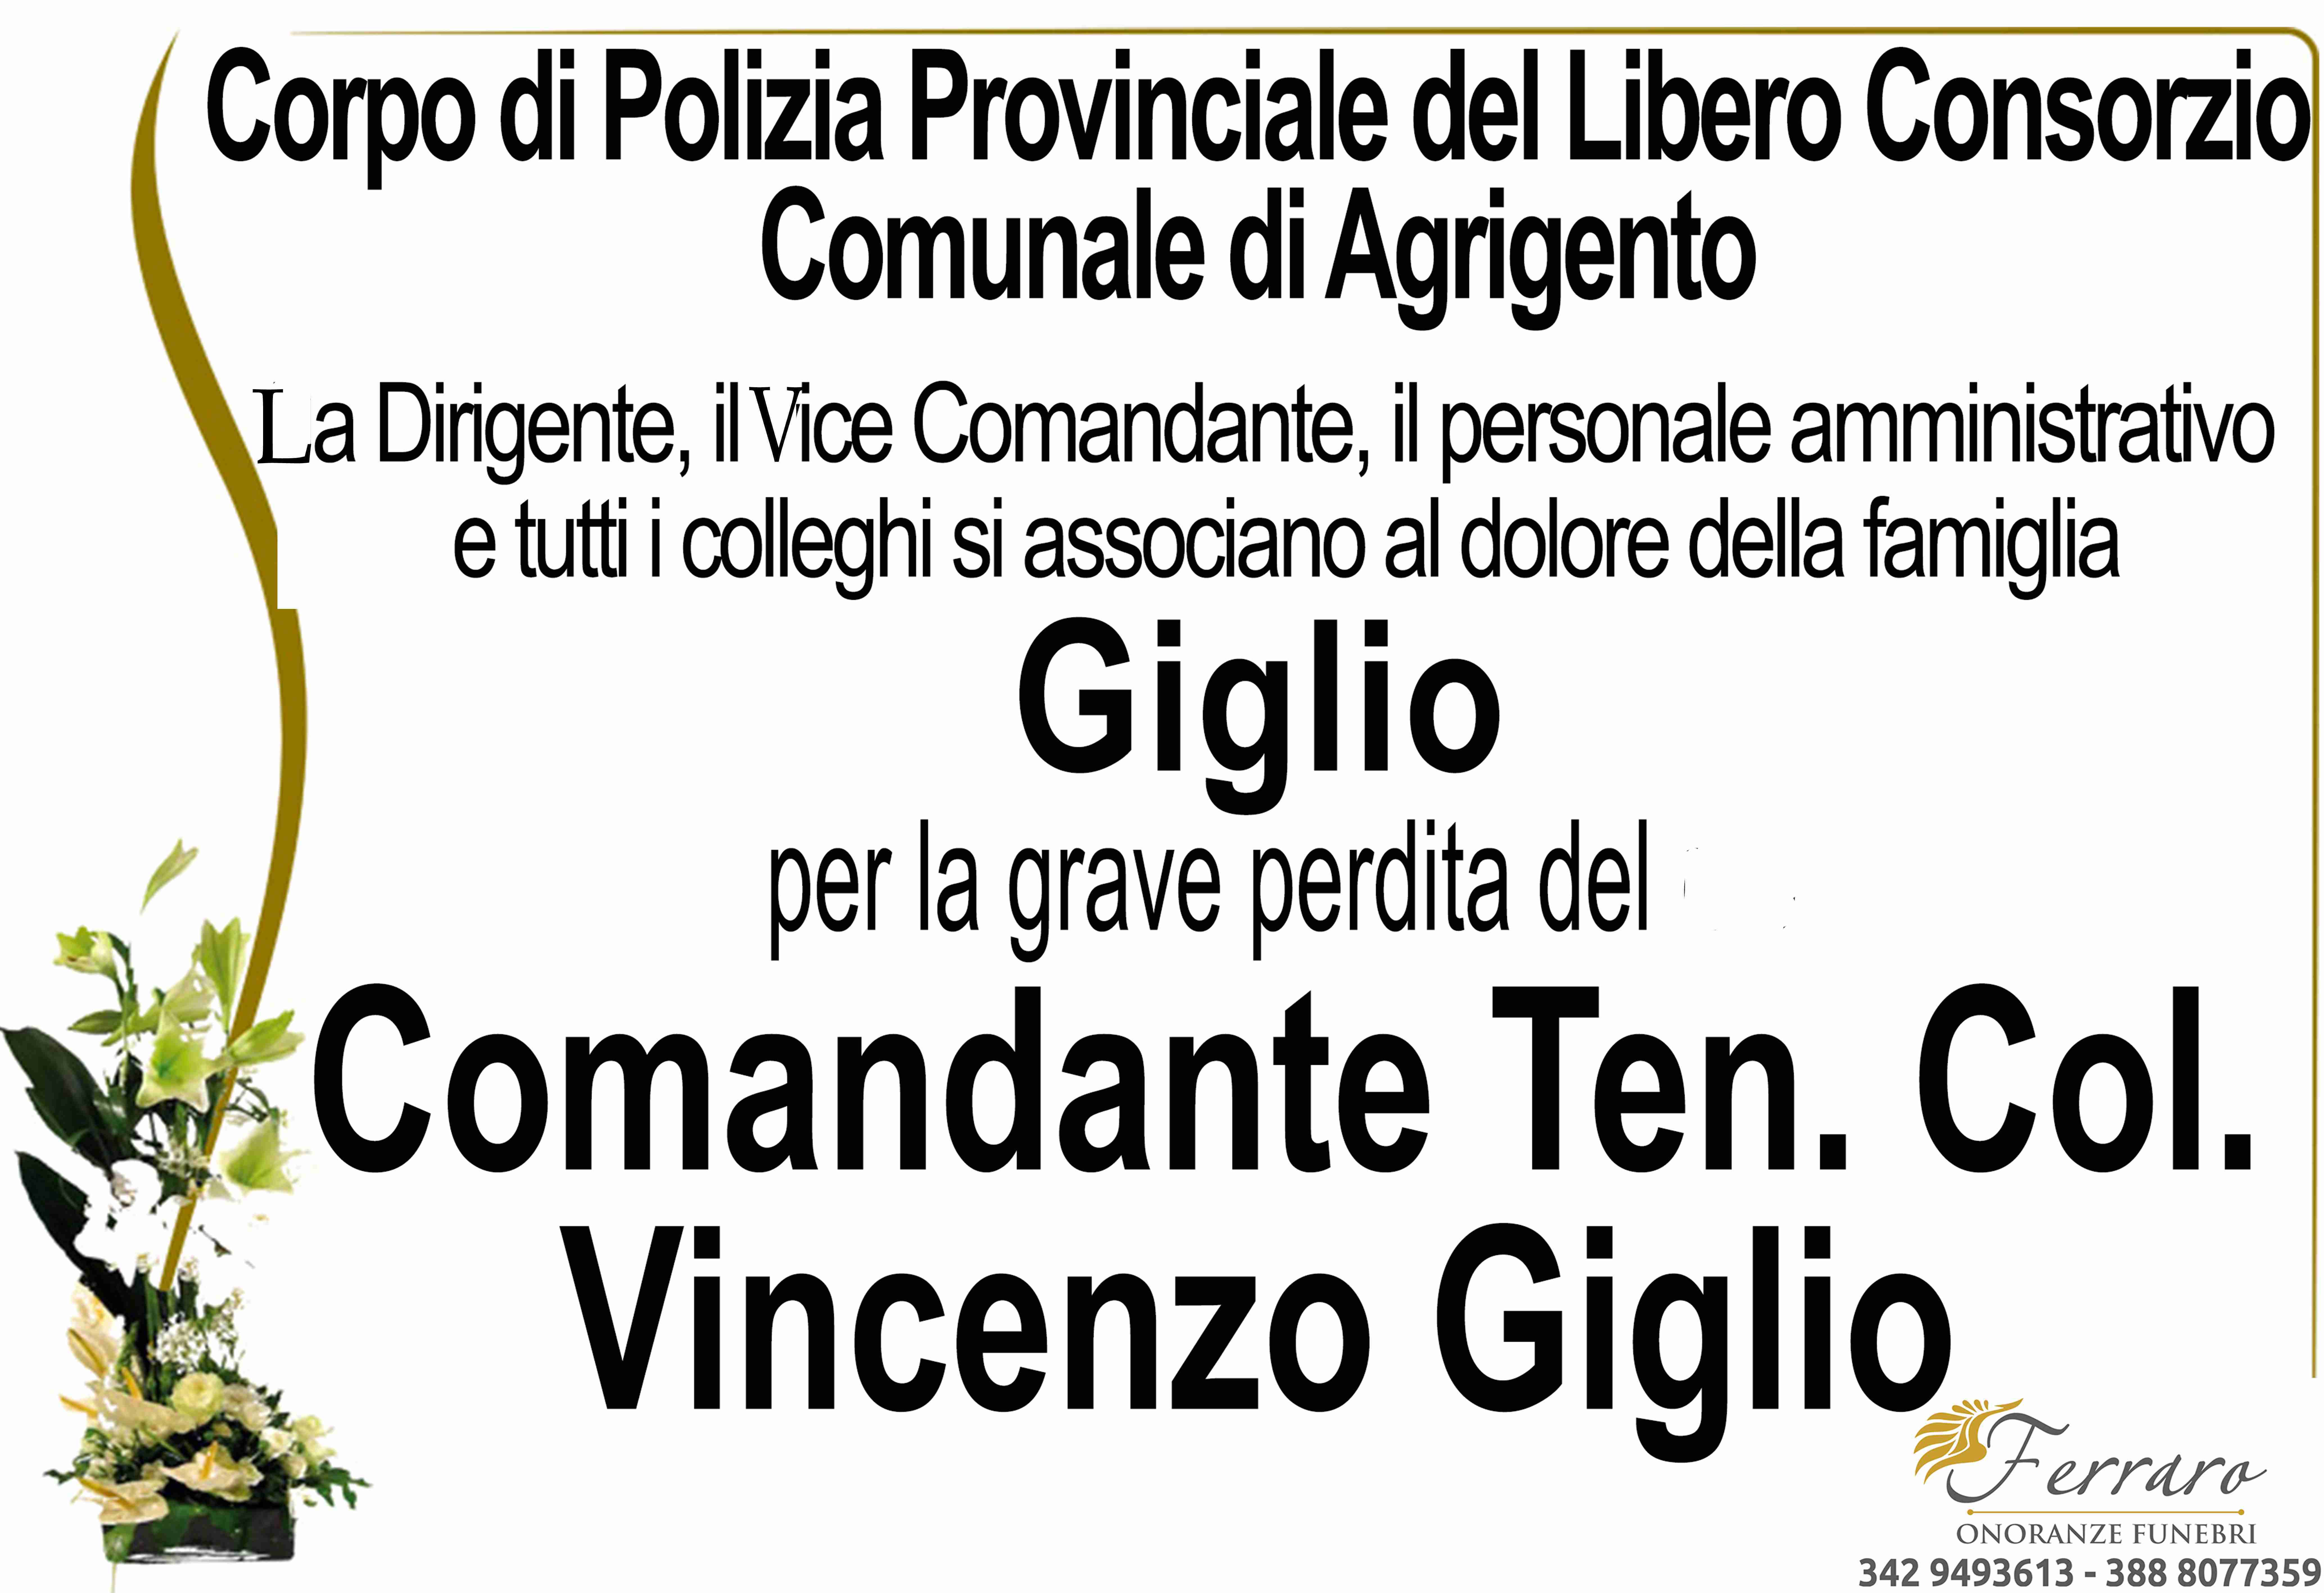 Dott. Comandante Col. Ten. Vincenzo Giglio